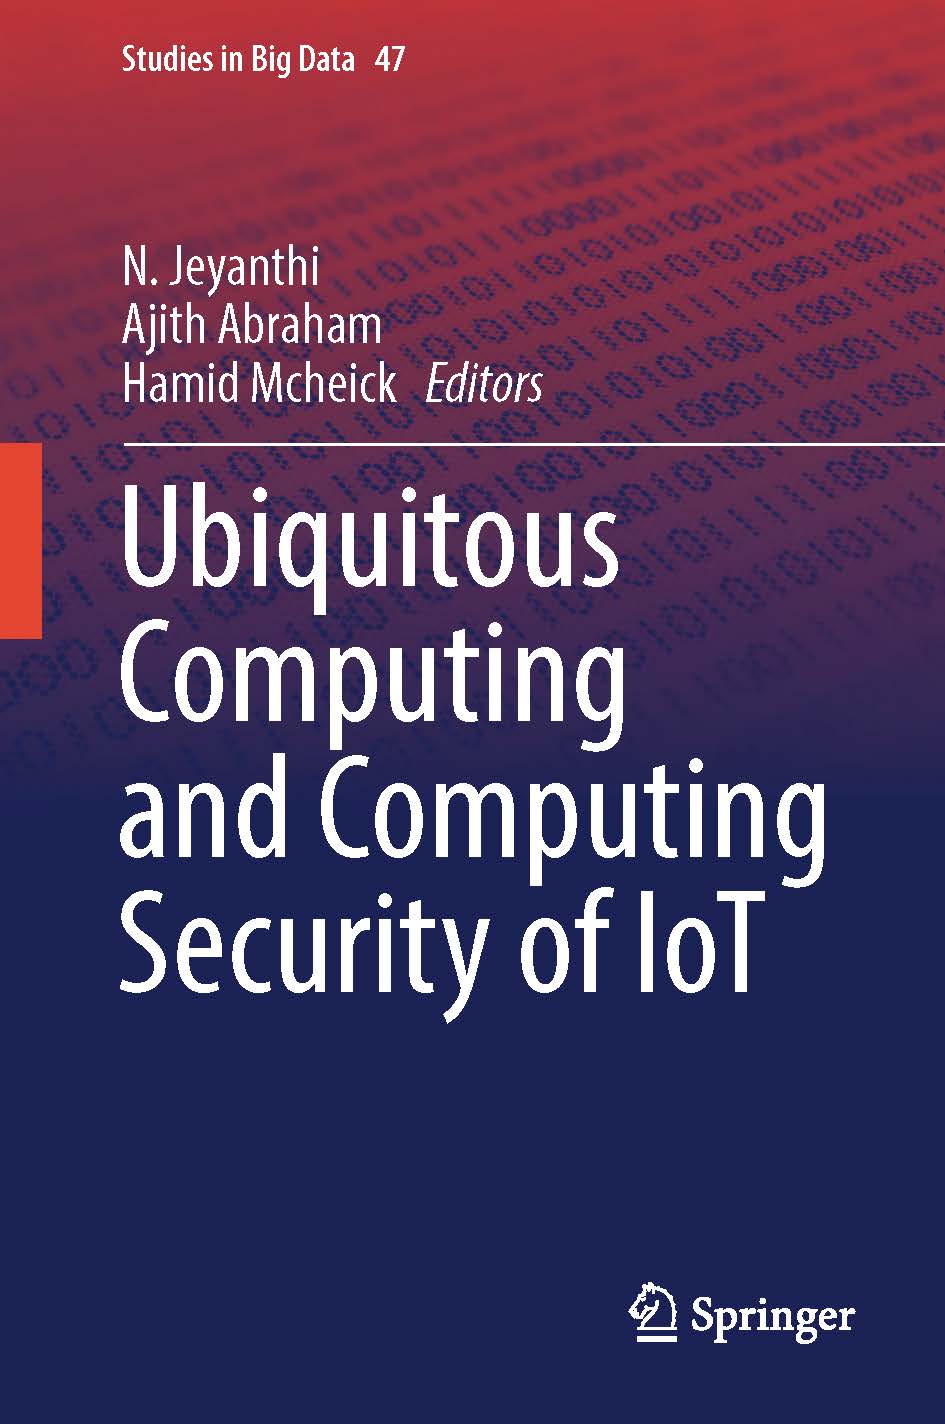 页面提取自－2019_Book_Ubiquitous Computing and Computing Security of IoT.jpg